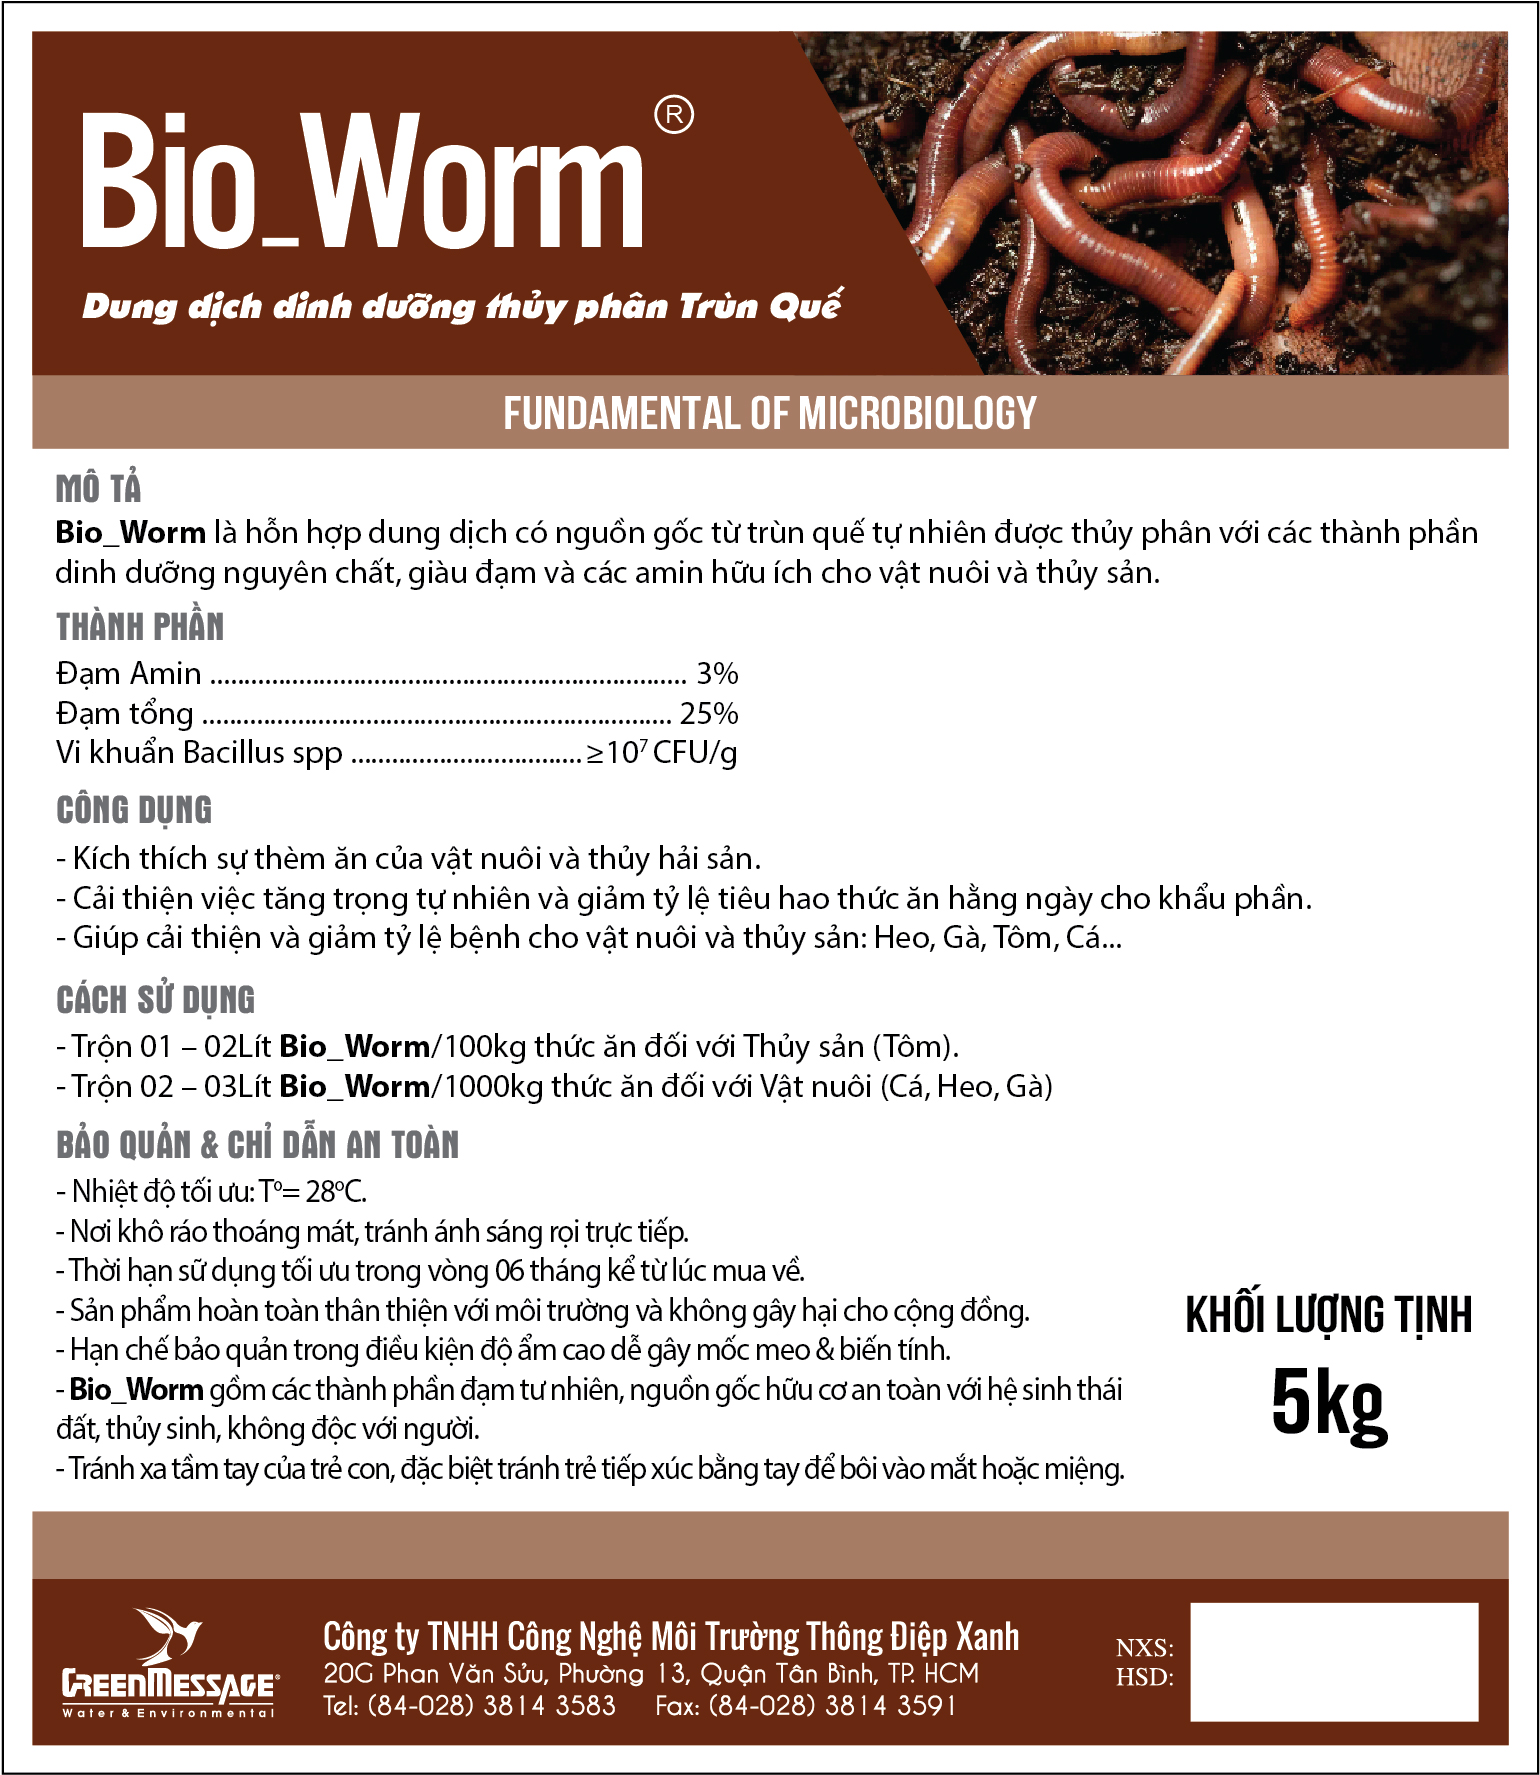 Bio_Worm - Dung dịch dinh dưỡng thủy phân Trùn Quế